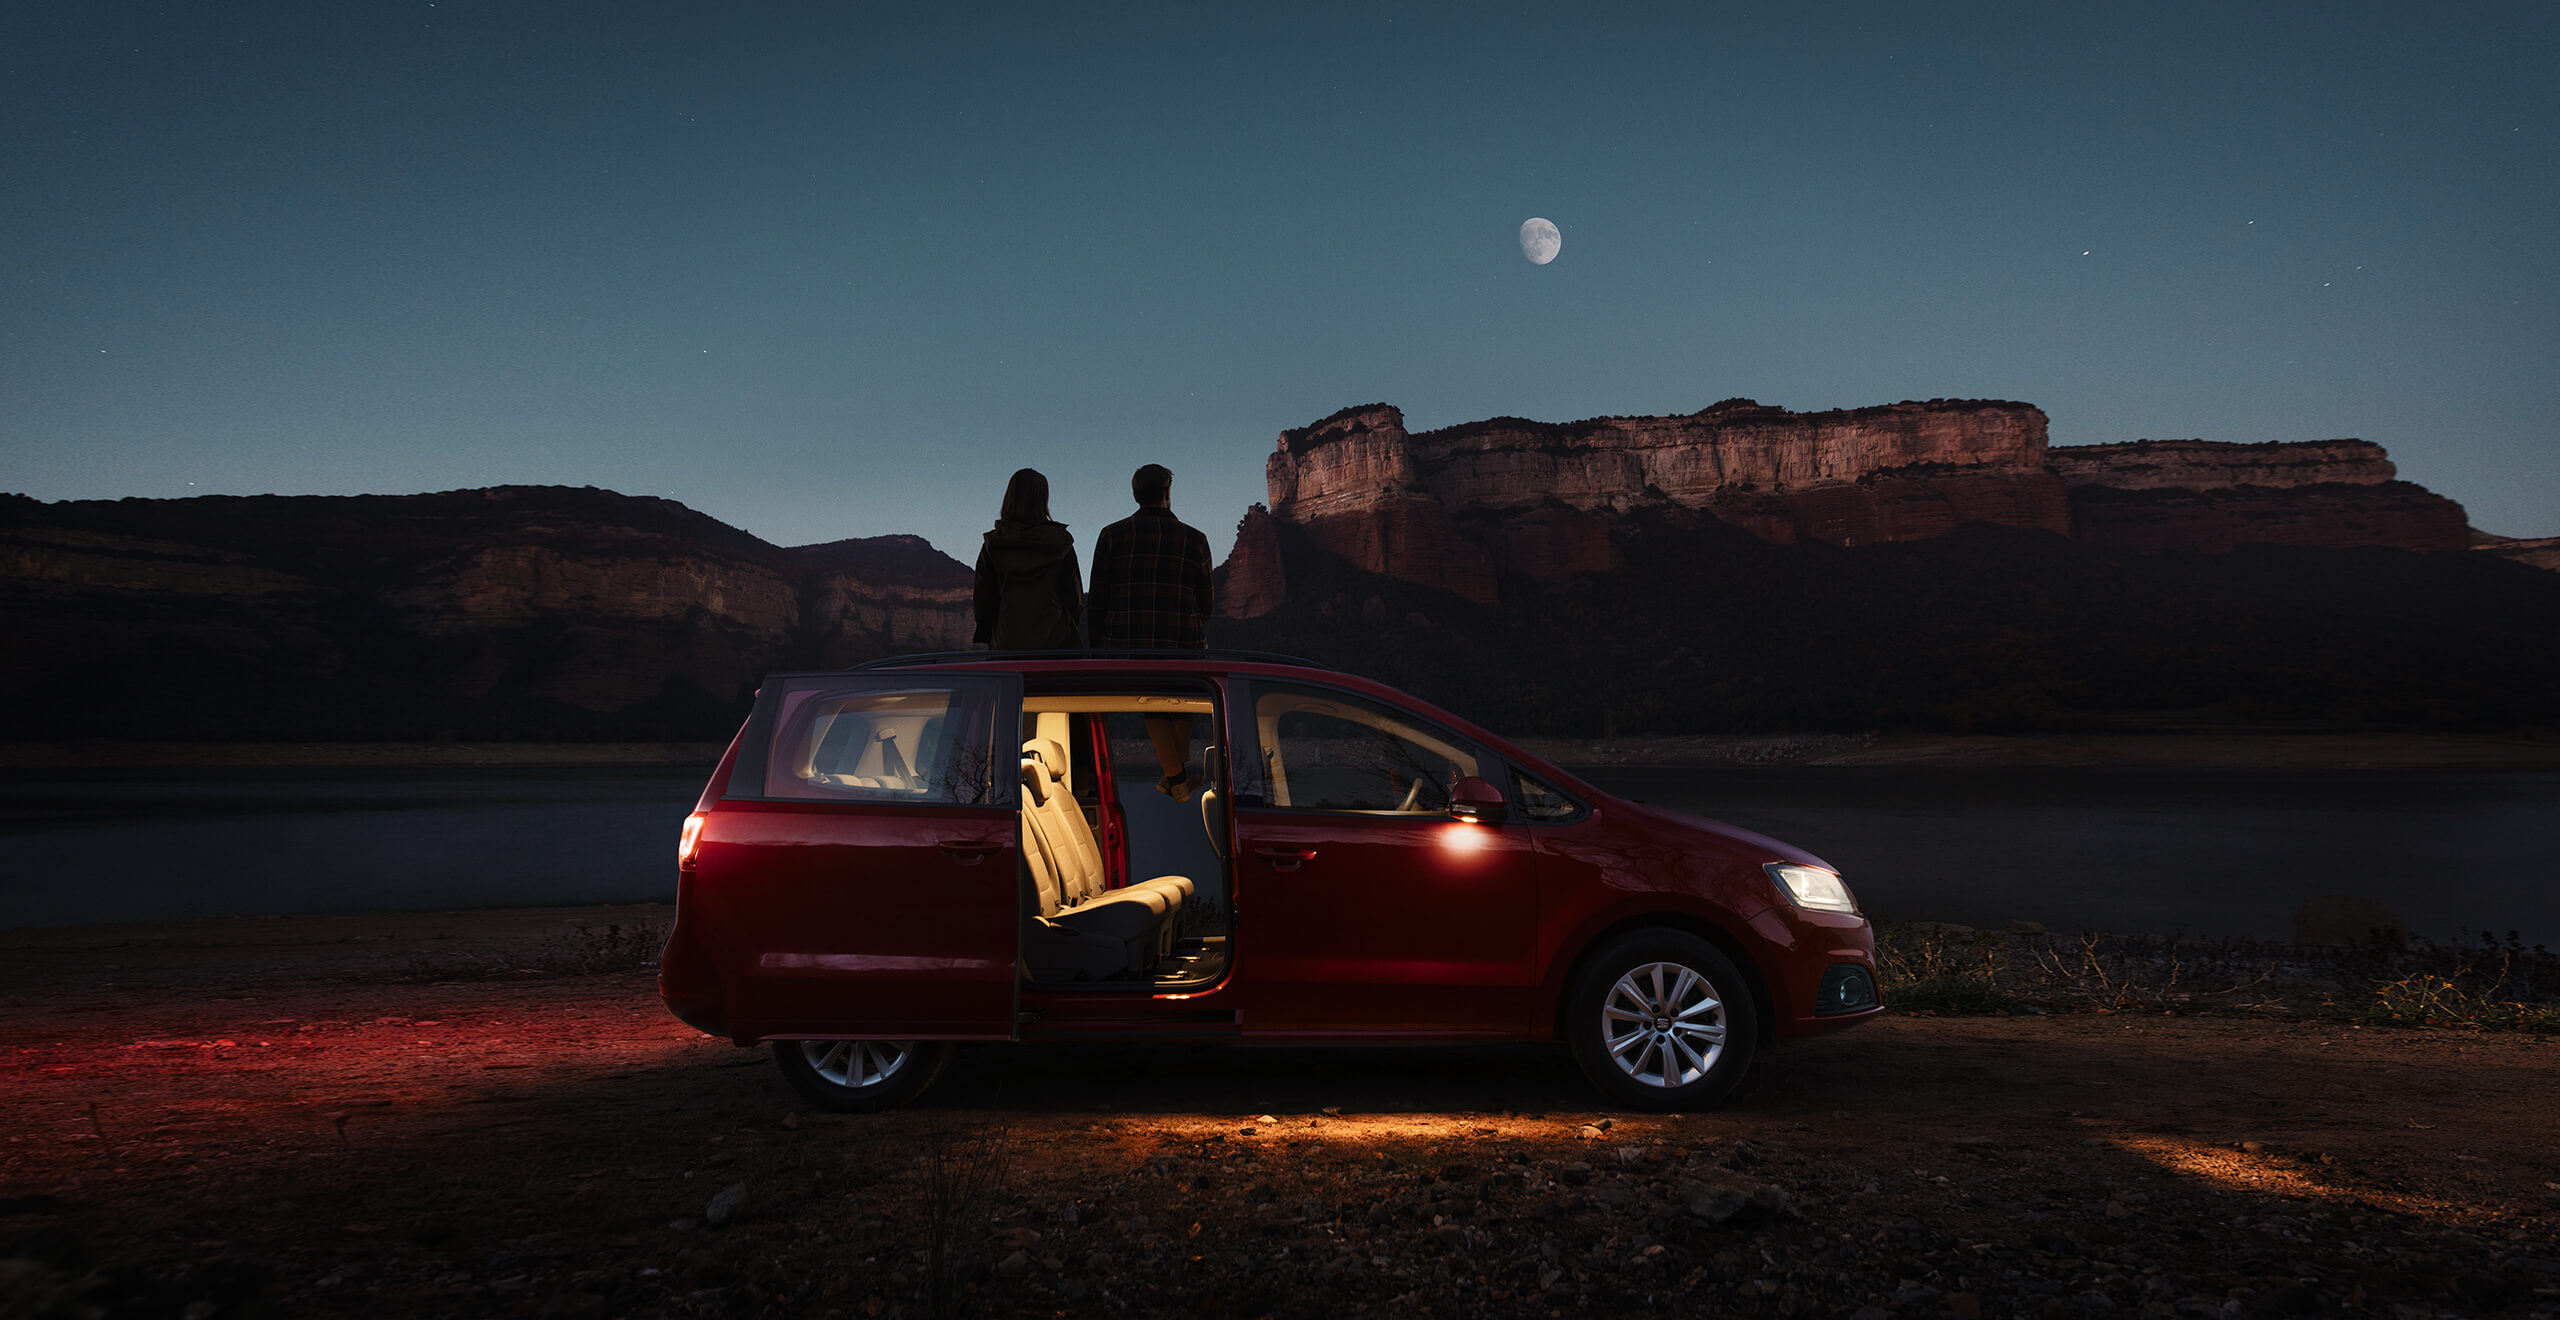 Mahtuniversaal SEAT Alhambra lahtiste ustega külgvaates õhtupimeduses ning kaks inimest vaatamas kuud ja mägist maastikku